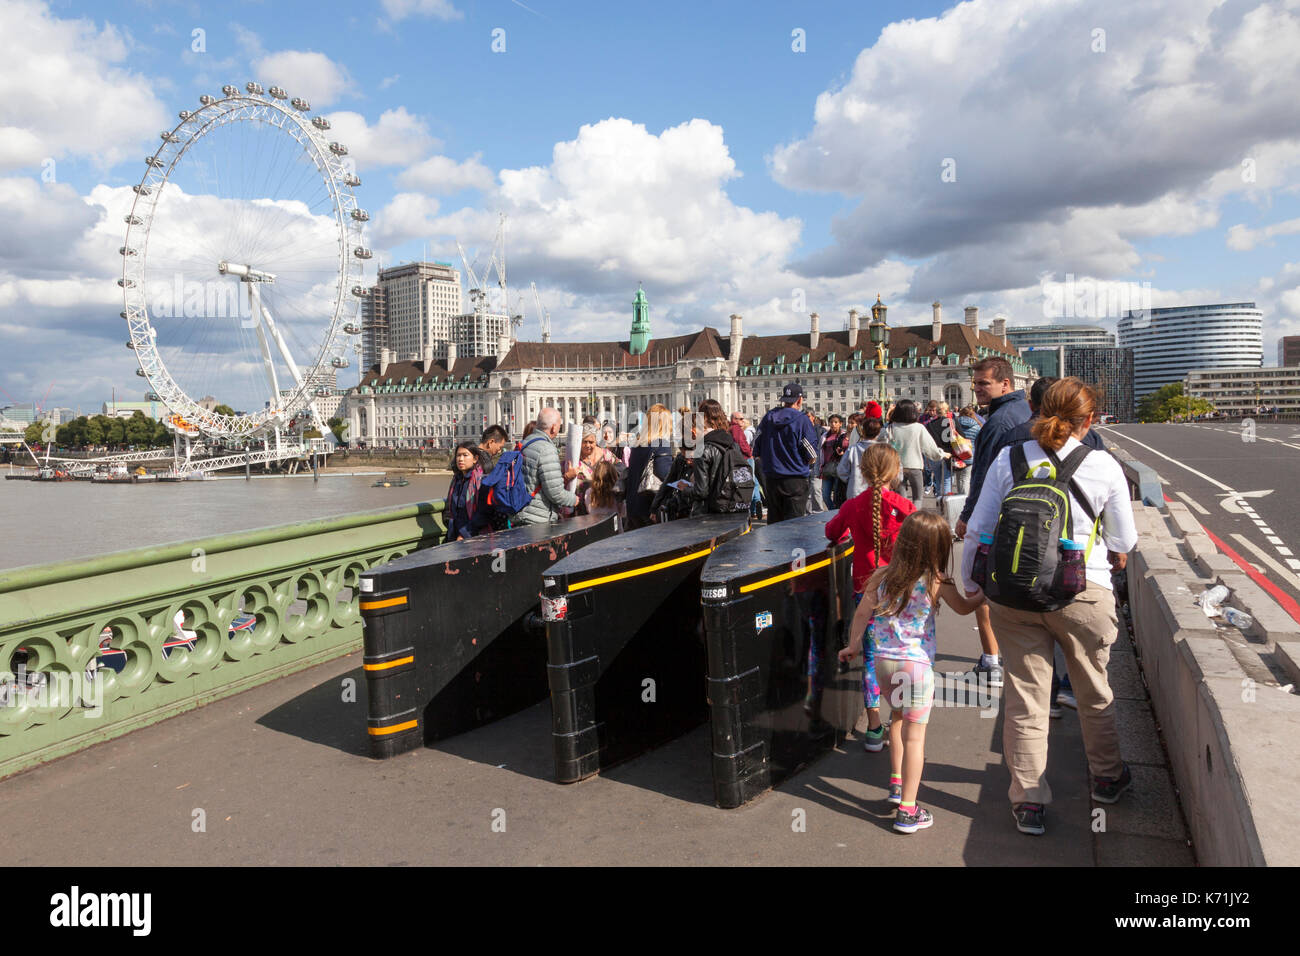 Barrières protégeant les piétons sur le pont de Westminster, Londres, Angleterre, Royaume-Uni Banque D'Images